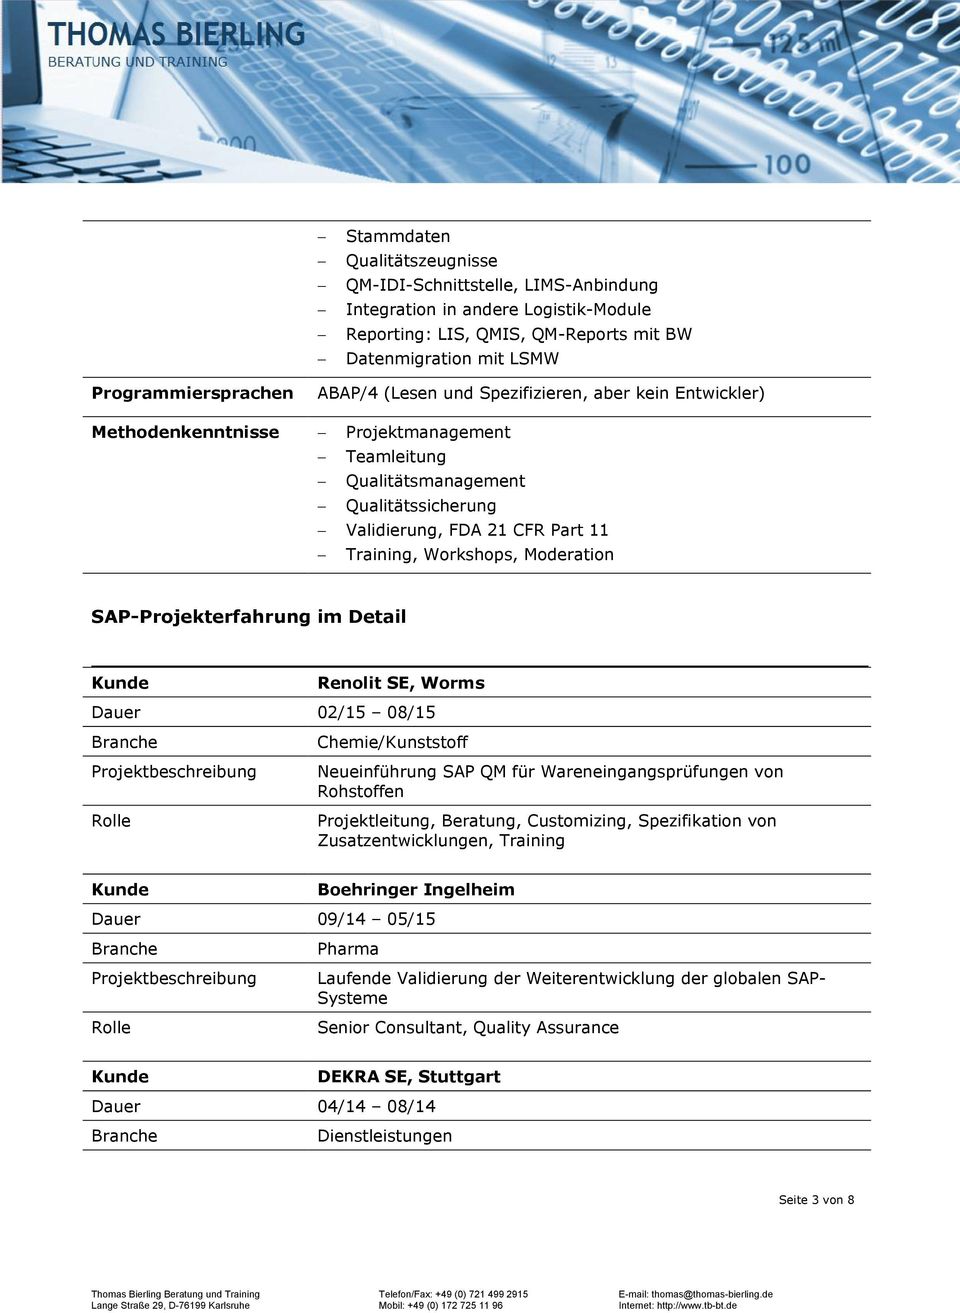 SAP-Projekterfahrung im Detail Renolit SE, Worms Dauer 02/15 08/15 /Kunststoff Neueinführung SAP QM für Wareneingangsprüfungen von Rohstoffen Projektleitung, Beratung, Customizing, Spezifikation von